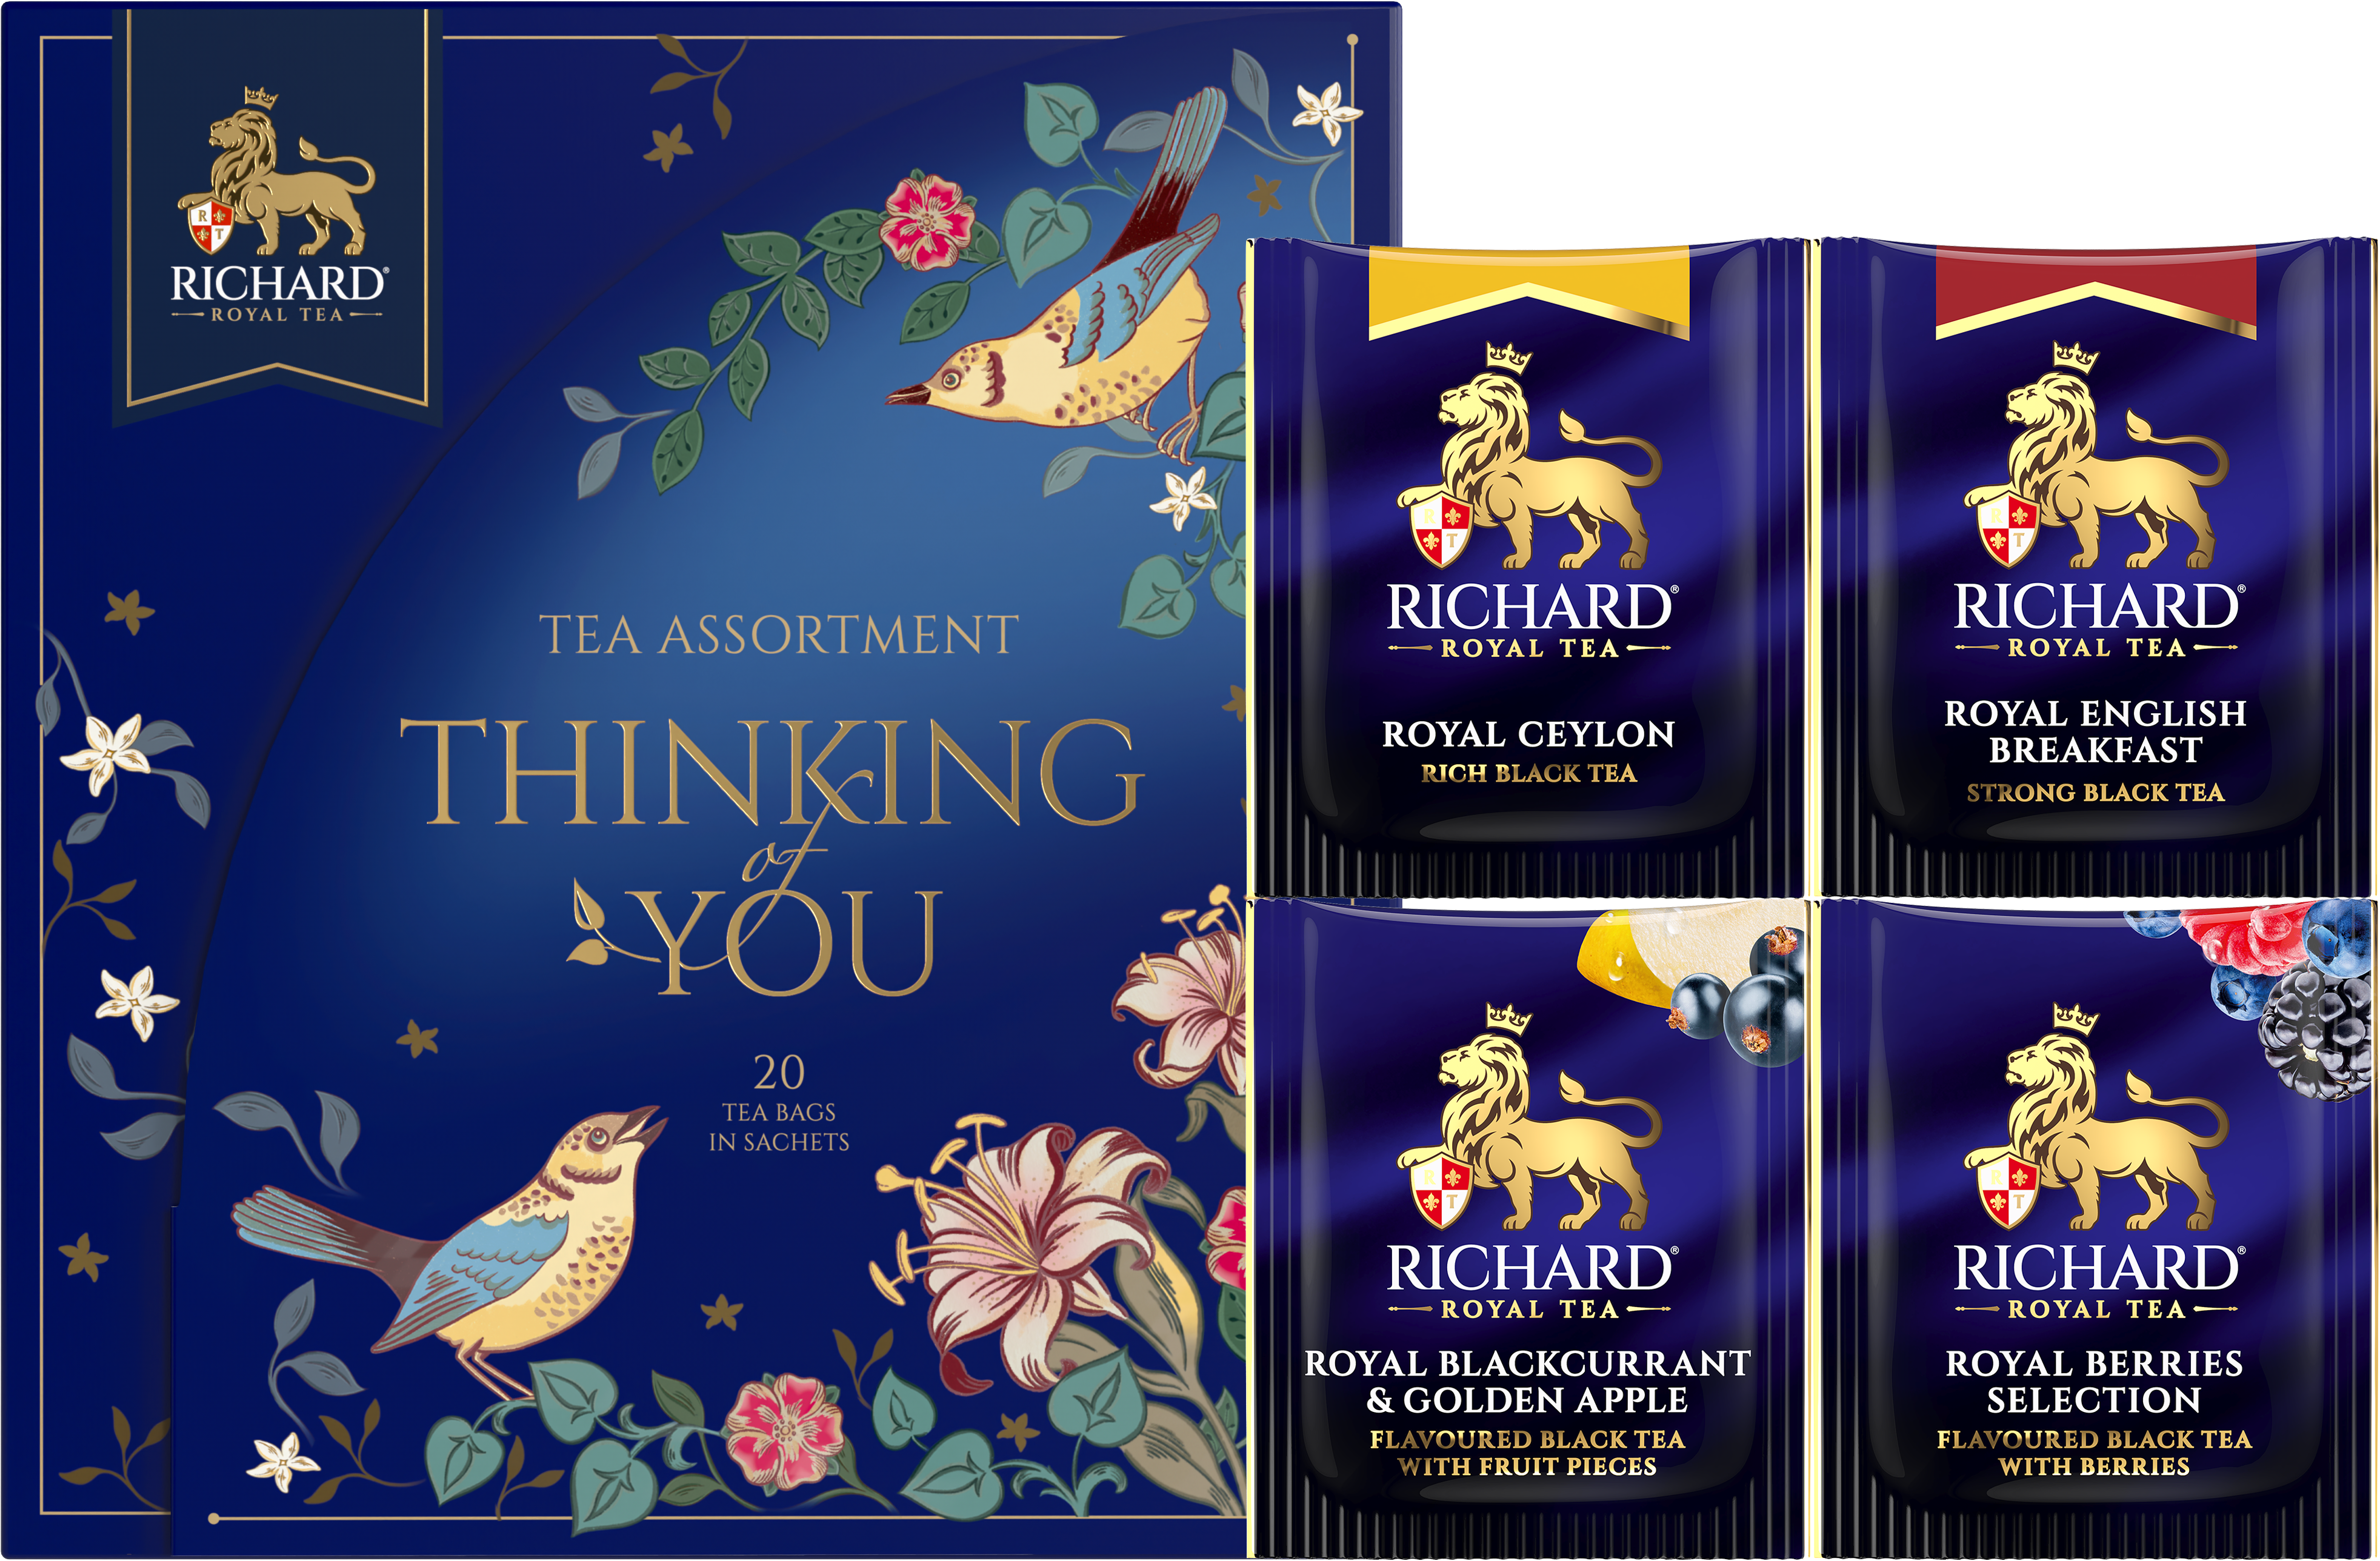 Richard "Rád Gondolok" filteres fekete teaválogatás, 37g Richard Royal Tea